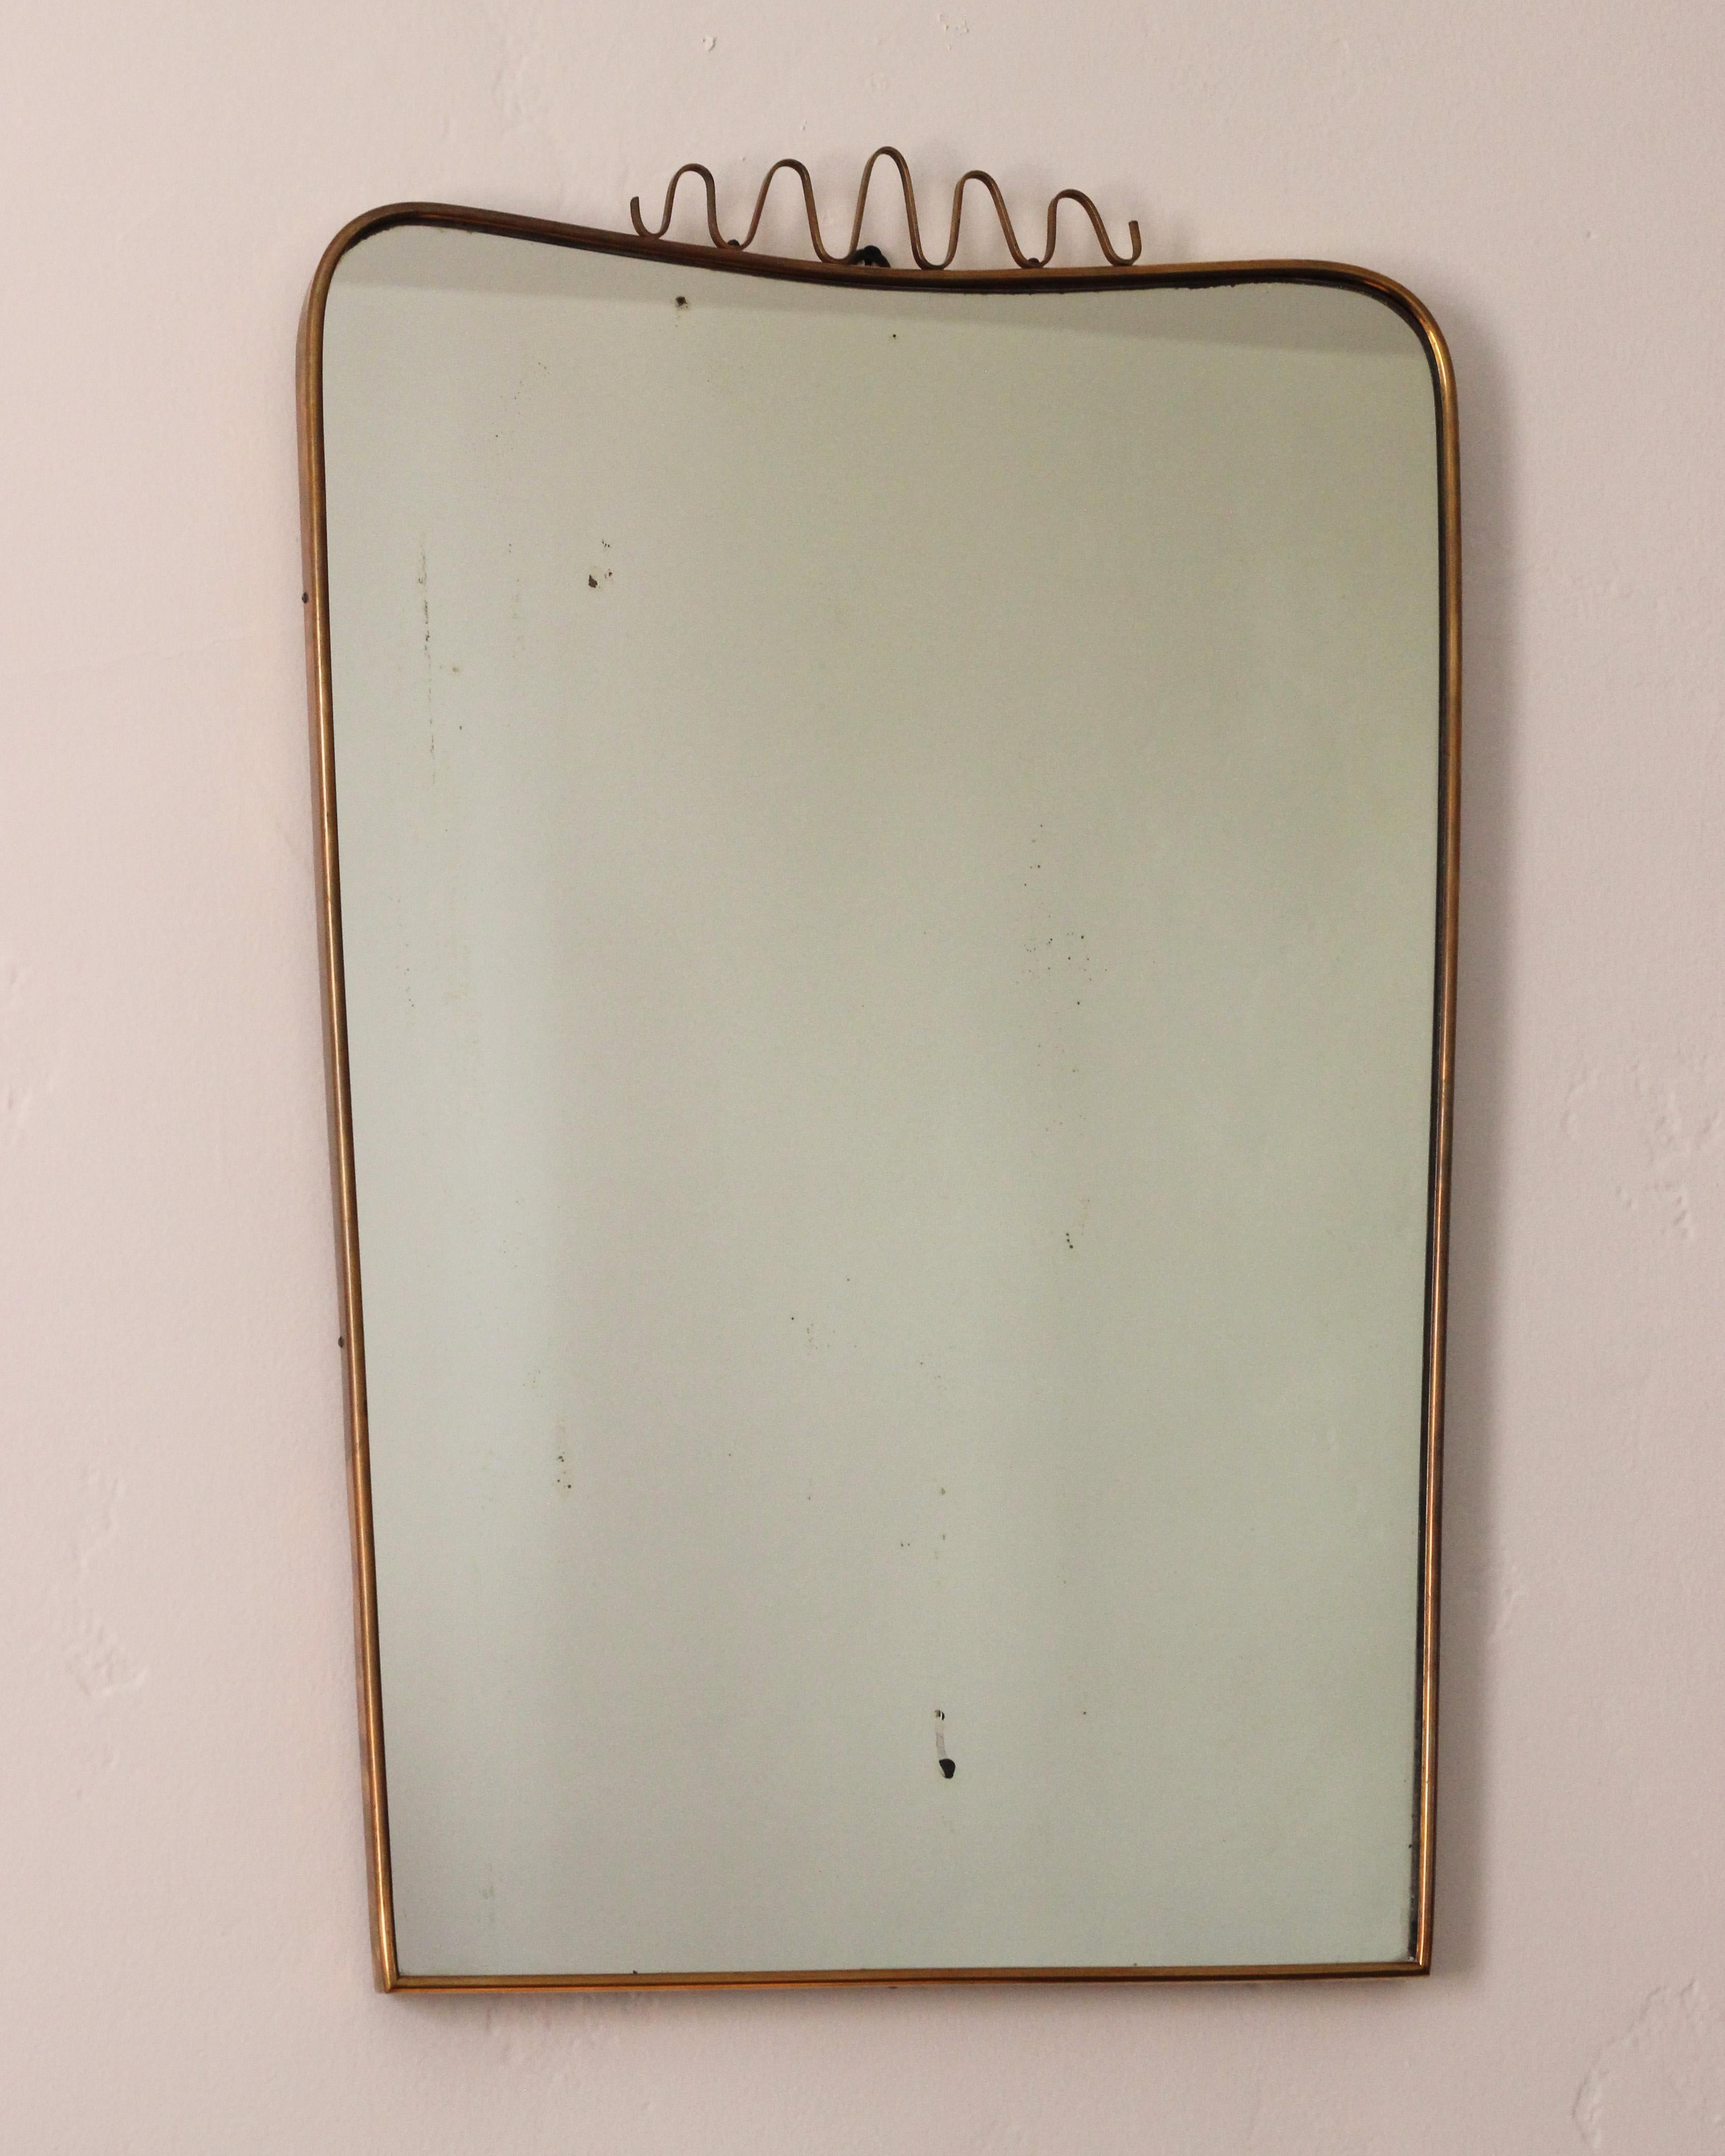 Miroir mural italien, produit en Italie, années 1960. Le verre miroir taillé organiquement est encadré de laiton et présente une patine. 

Parmi les autres designers de l'époque, citons Gio Ponti, Fontana Arte, Max Ingrand, Franco Albini et Josef